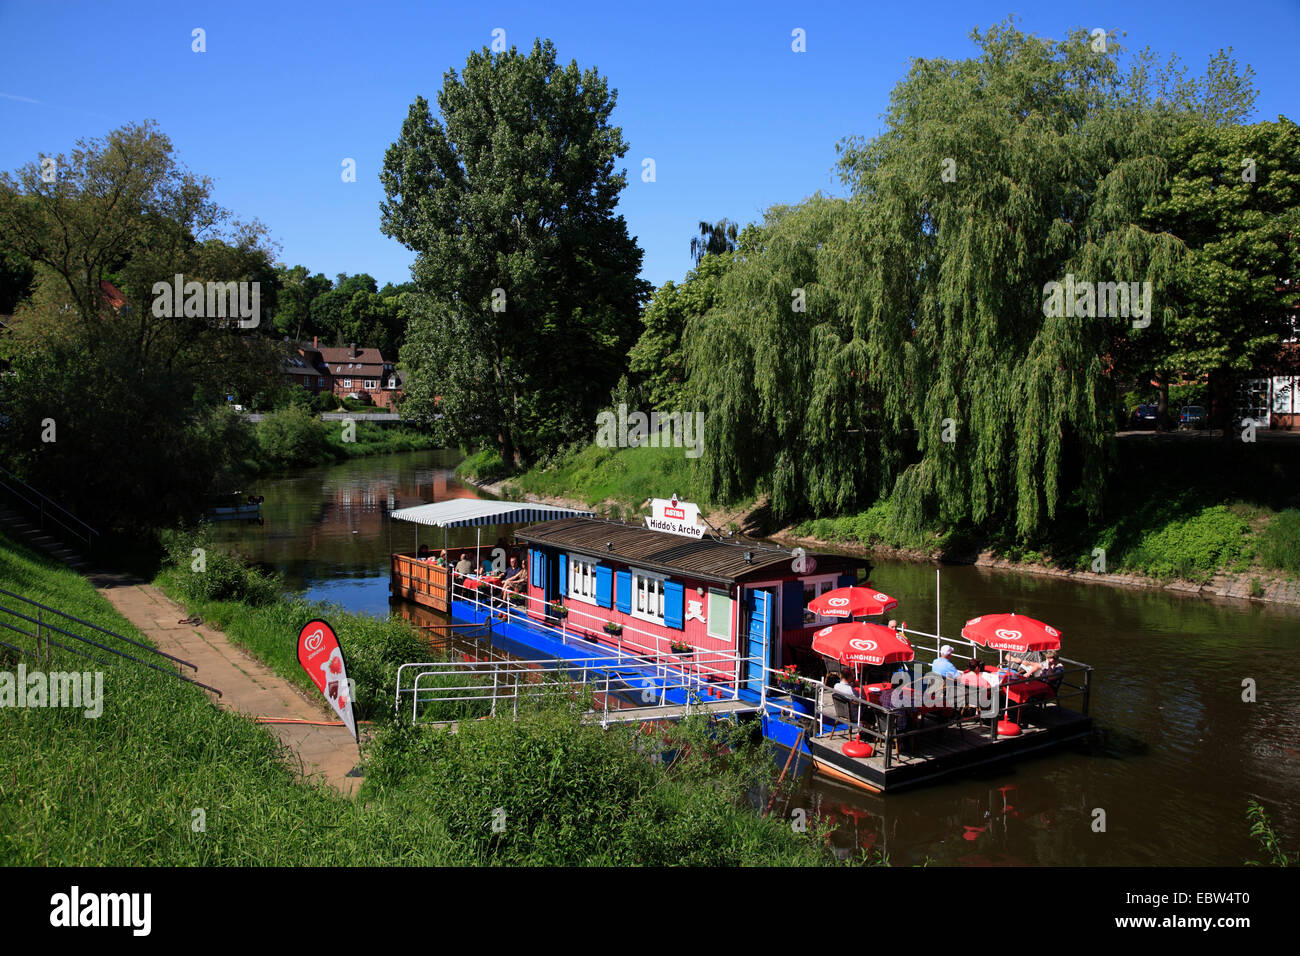 Schwimmbad Restaurant HIDDOS ARCHE am Fluss Sperrwerks, Hitzacker / Elbe, Wendland, Niedersachsen, Deutschland, Europa Stockfoto